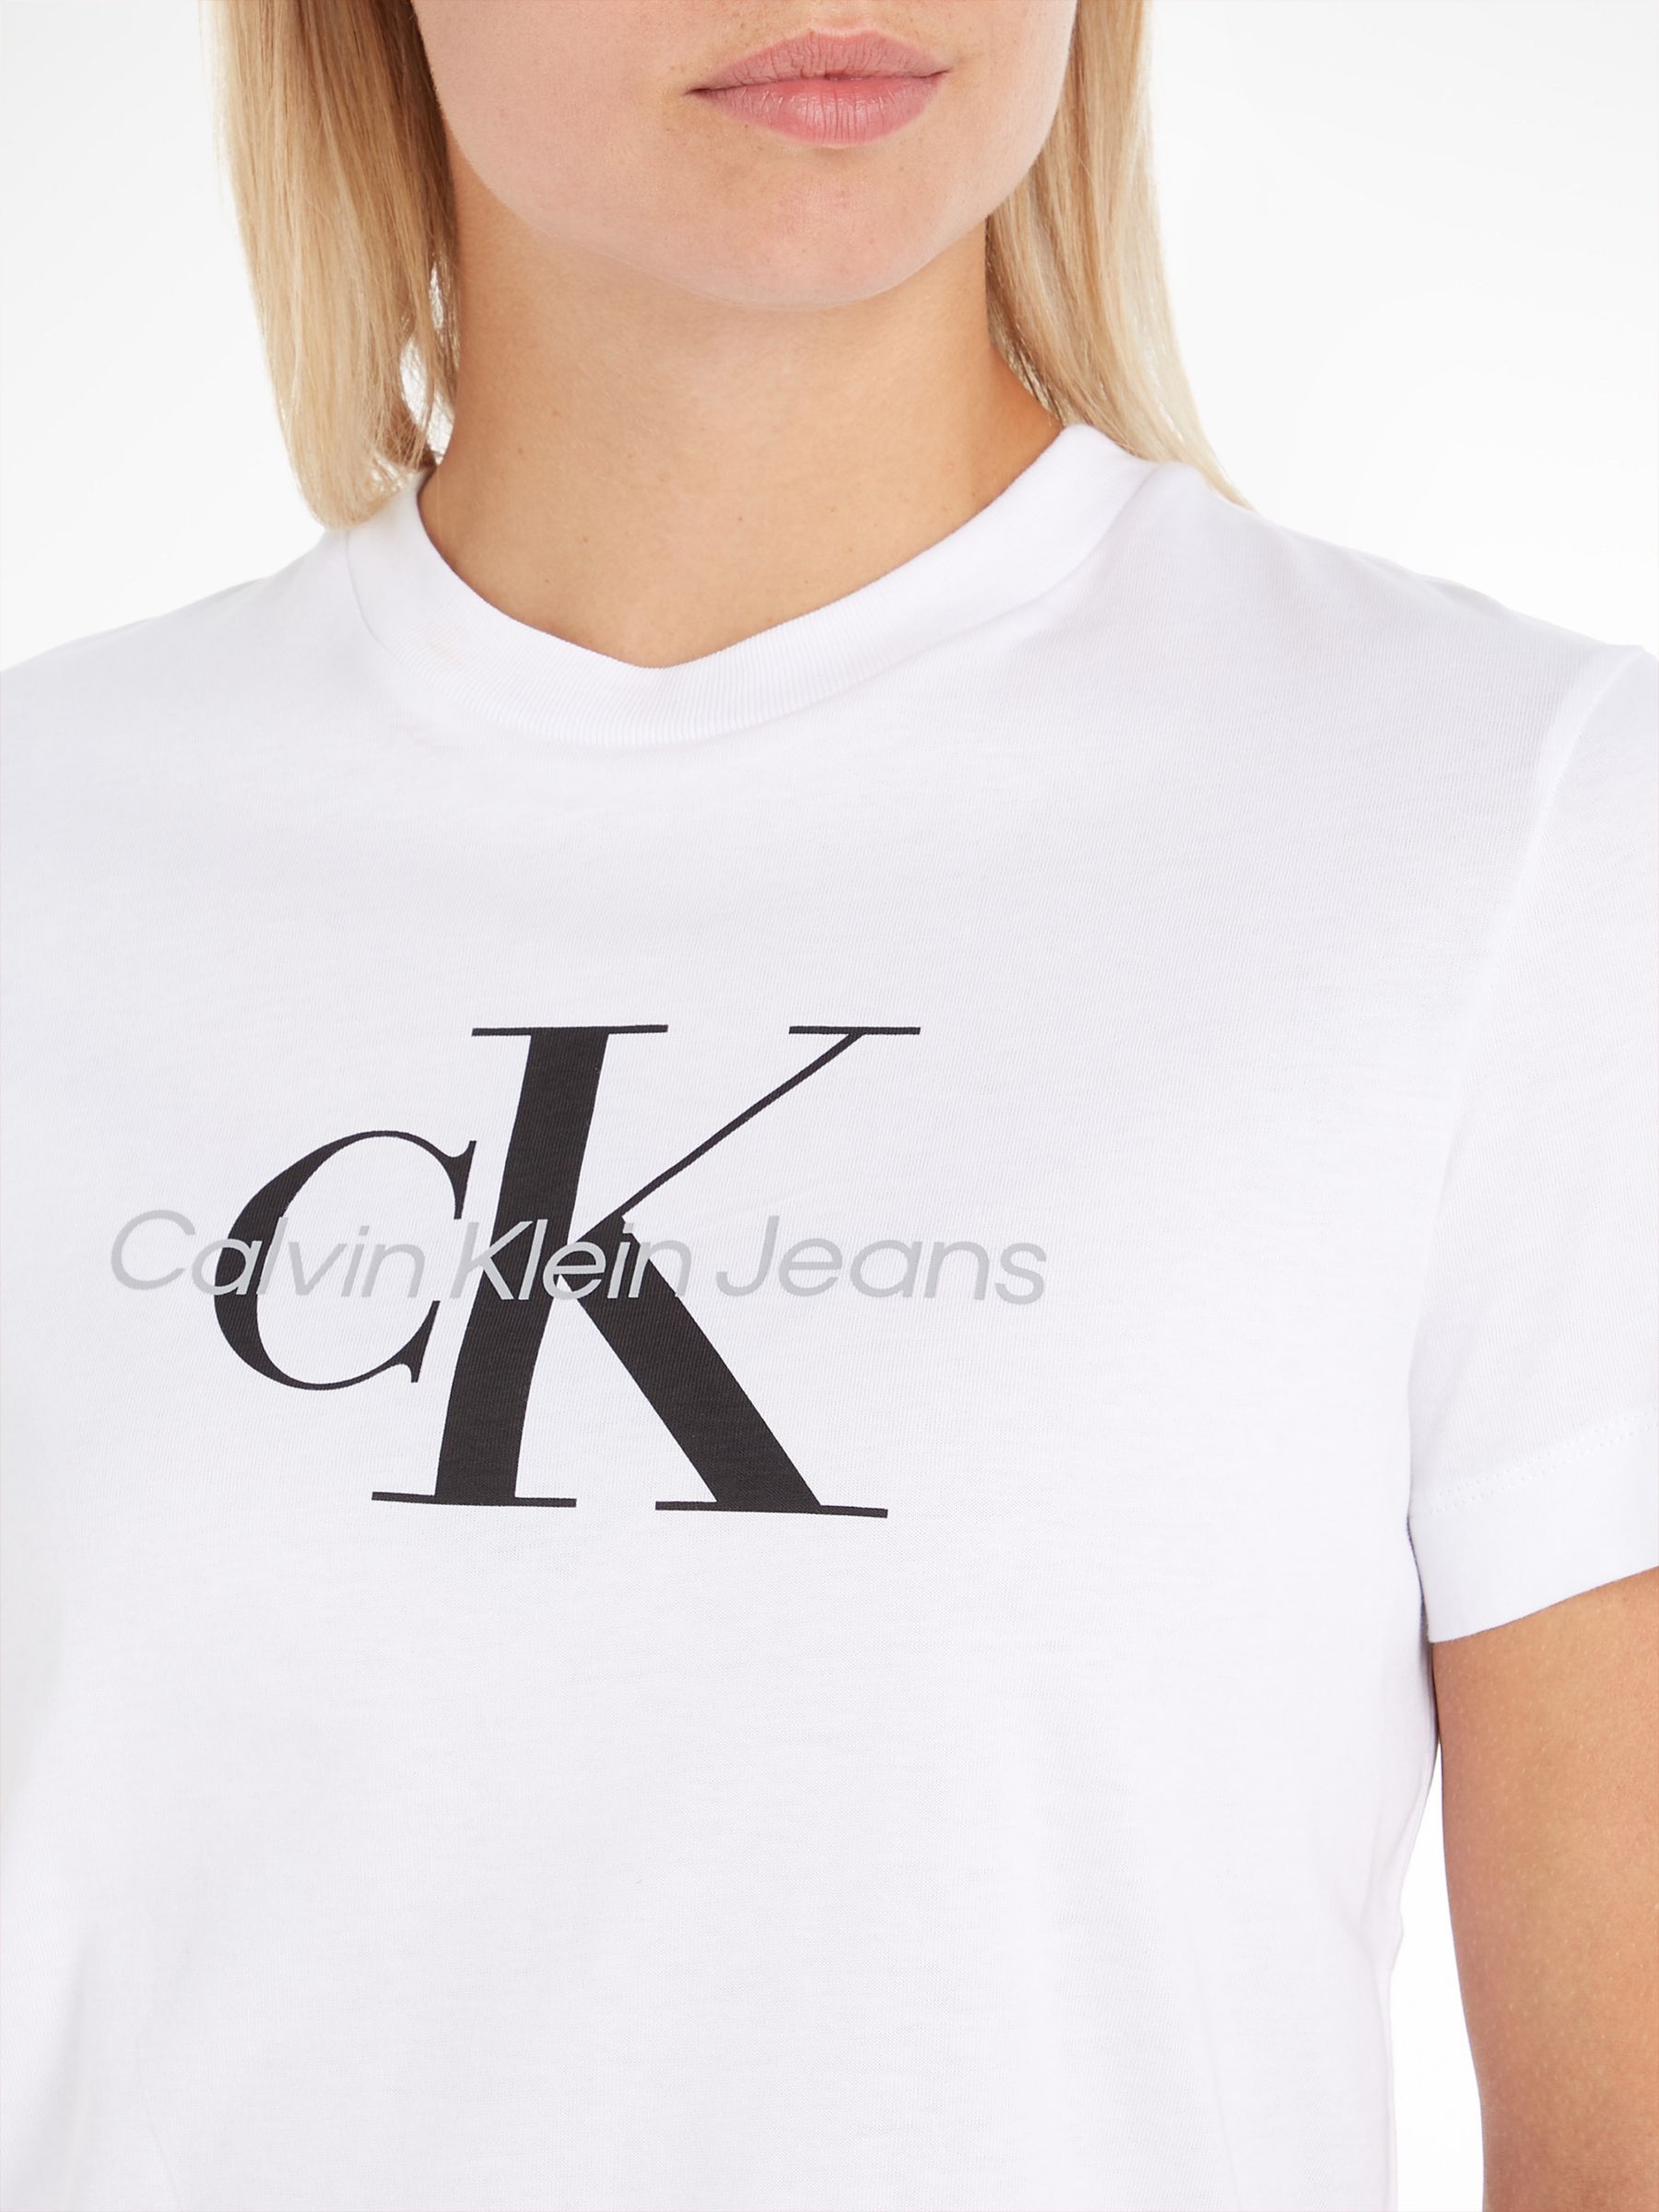 Logo Lewis Bright at T-Shirt, Calvin Monogram Klein & White Partners John